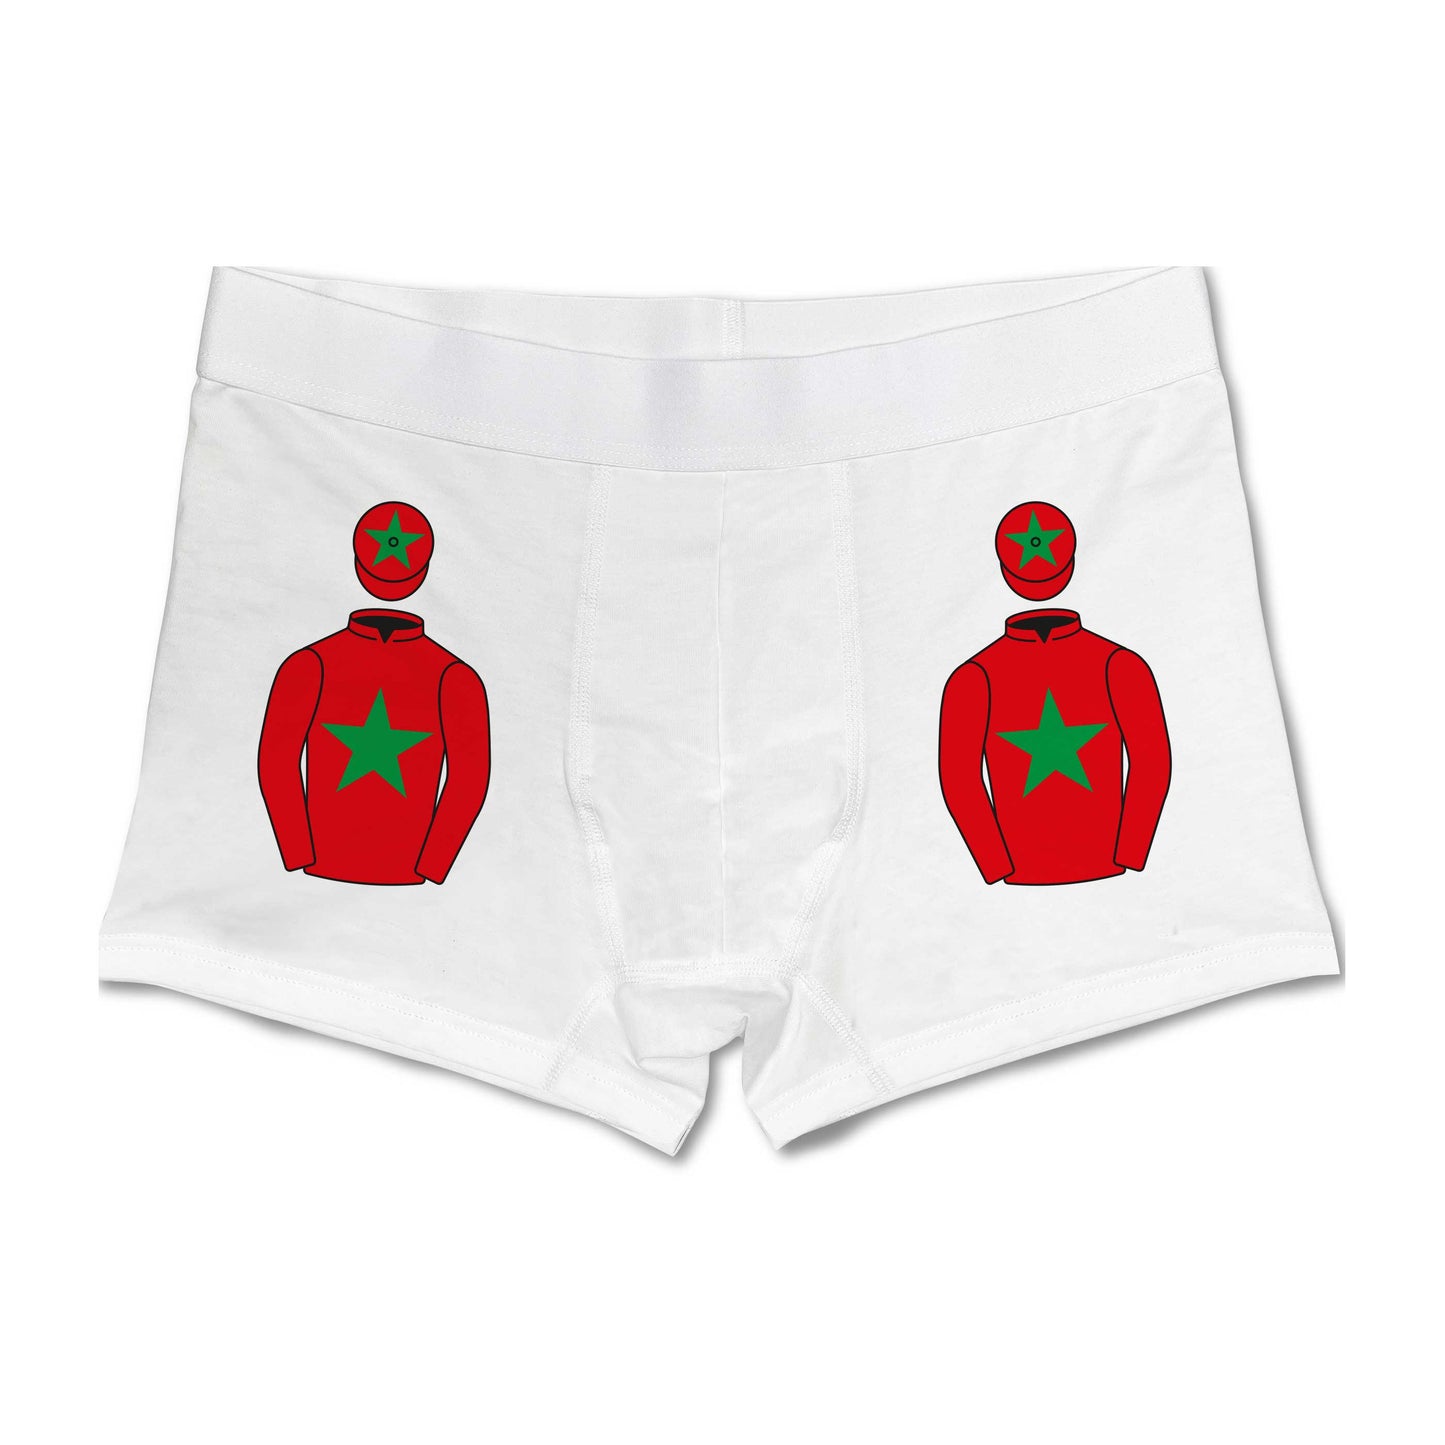 A Selway & P Wavish Mens Boxer Shorts